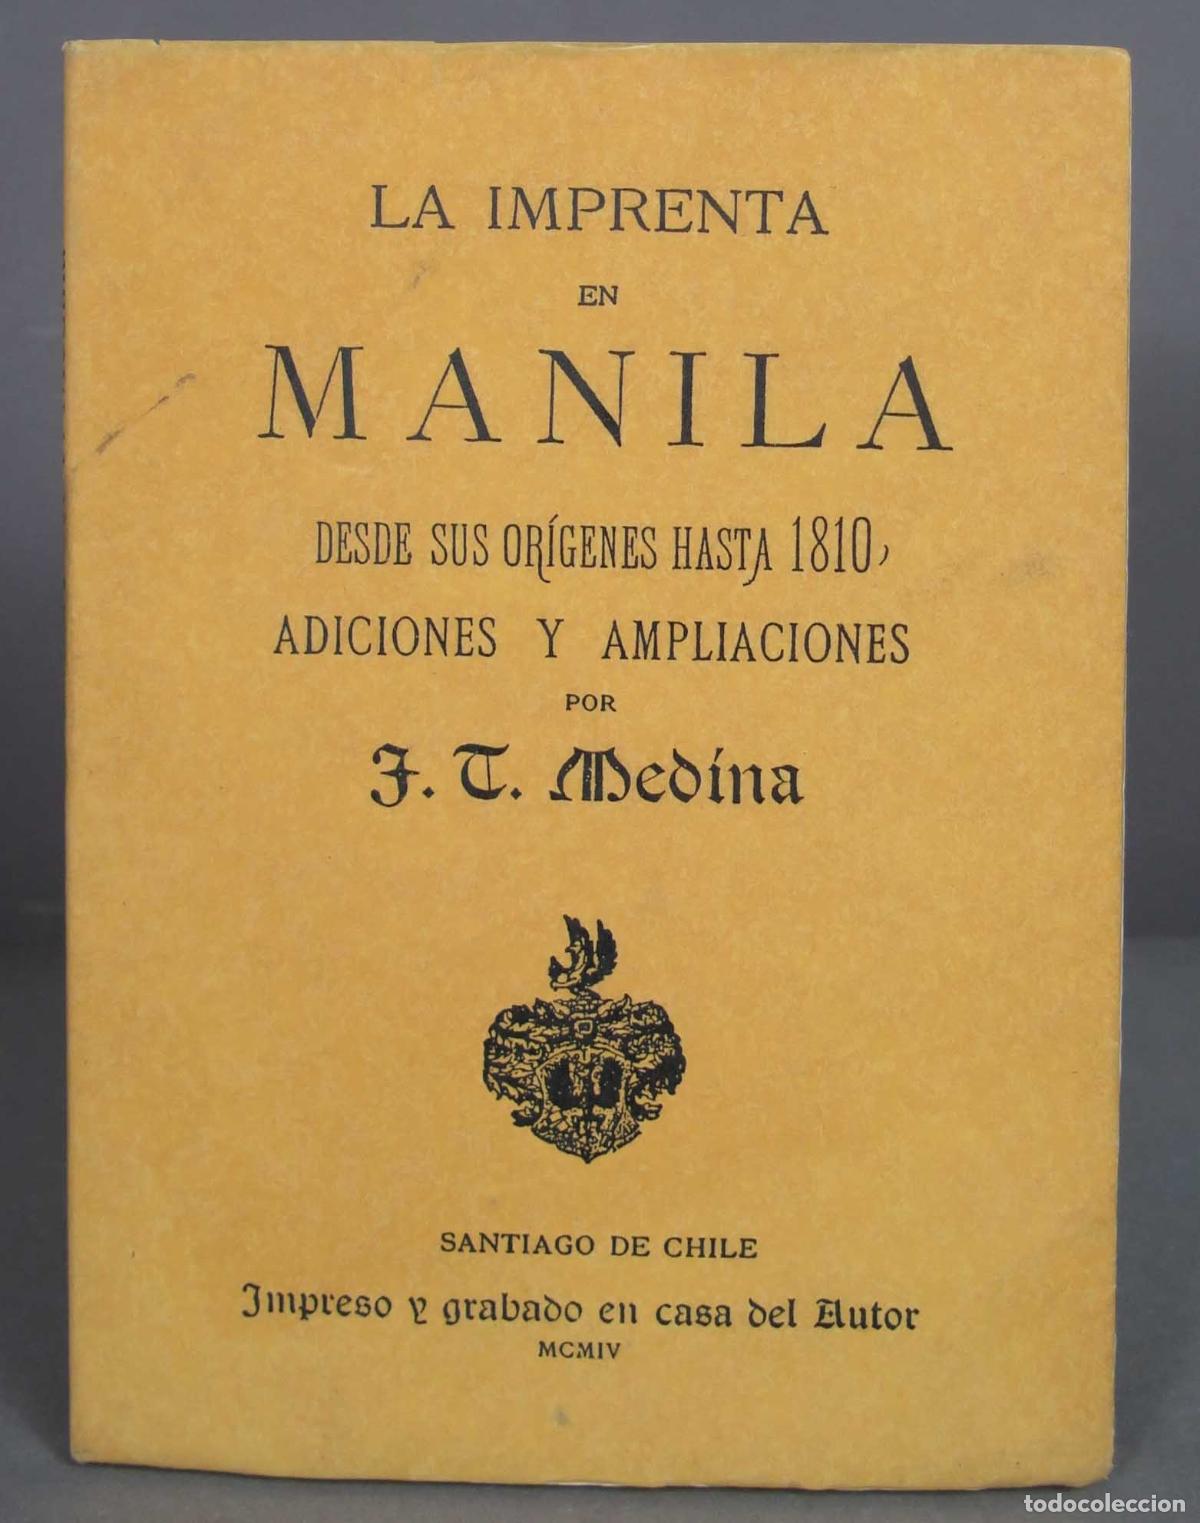 Libro Manila